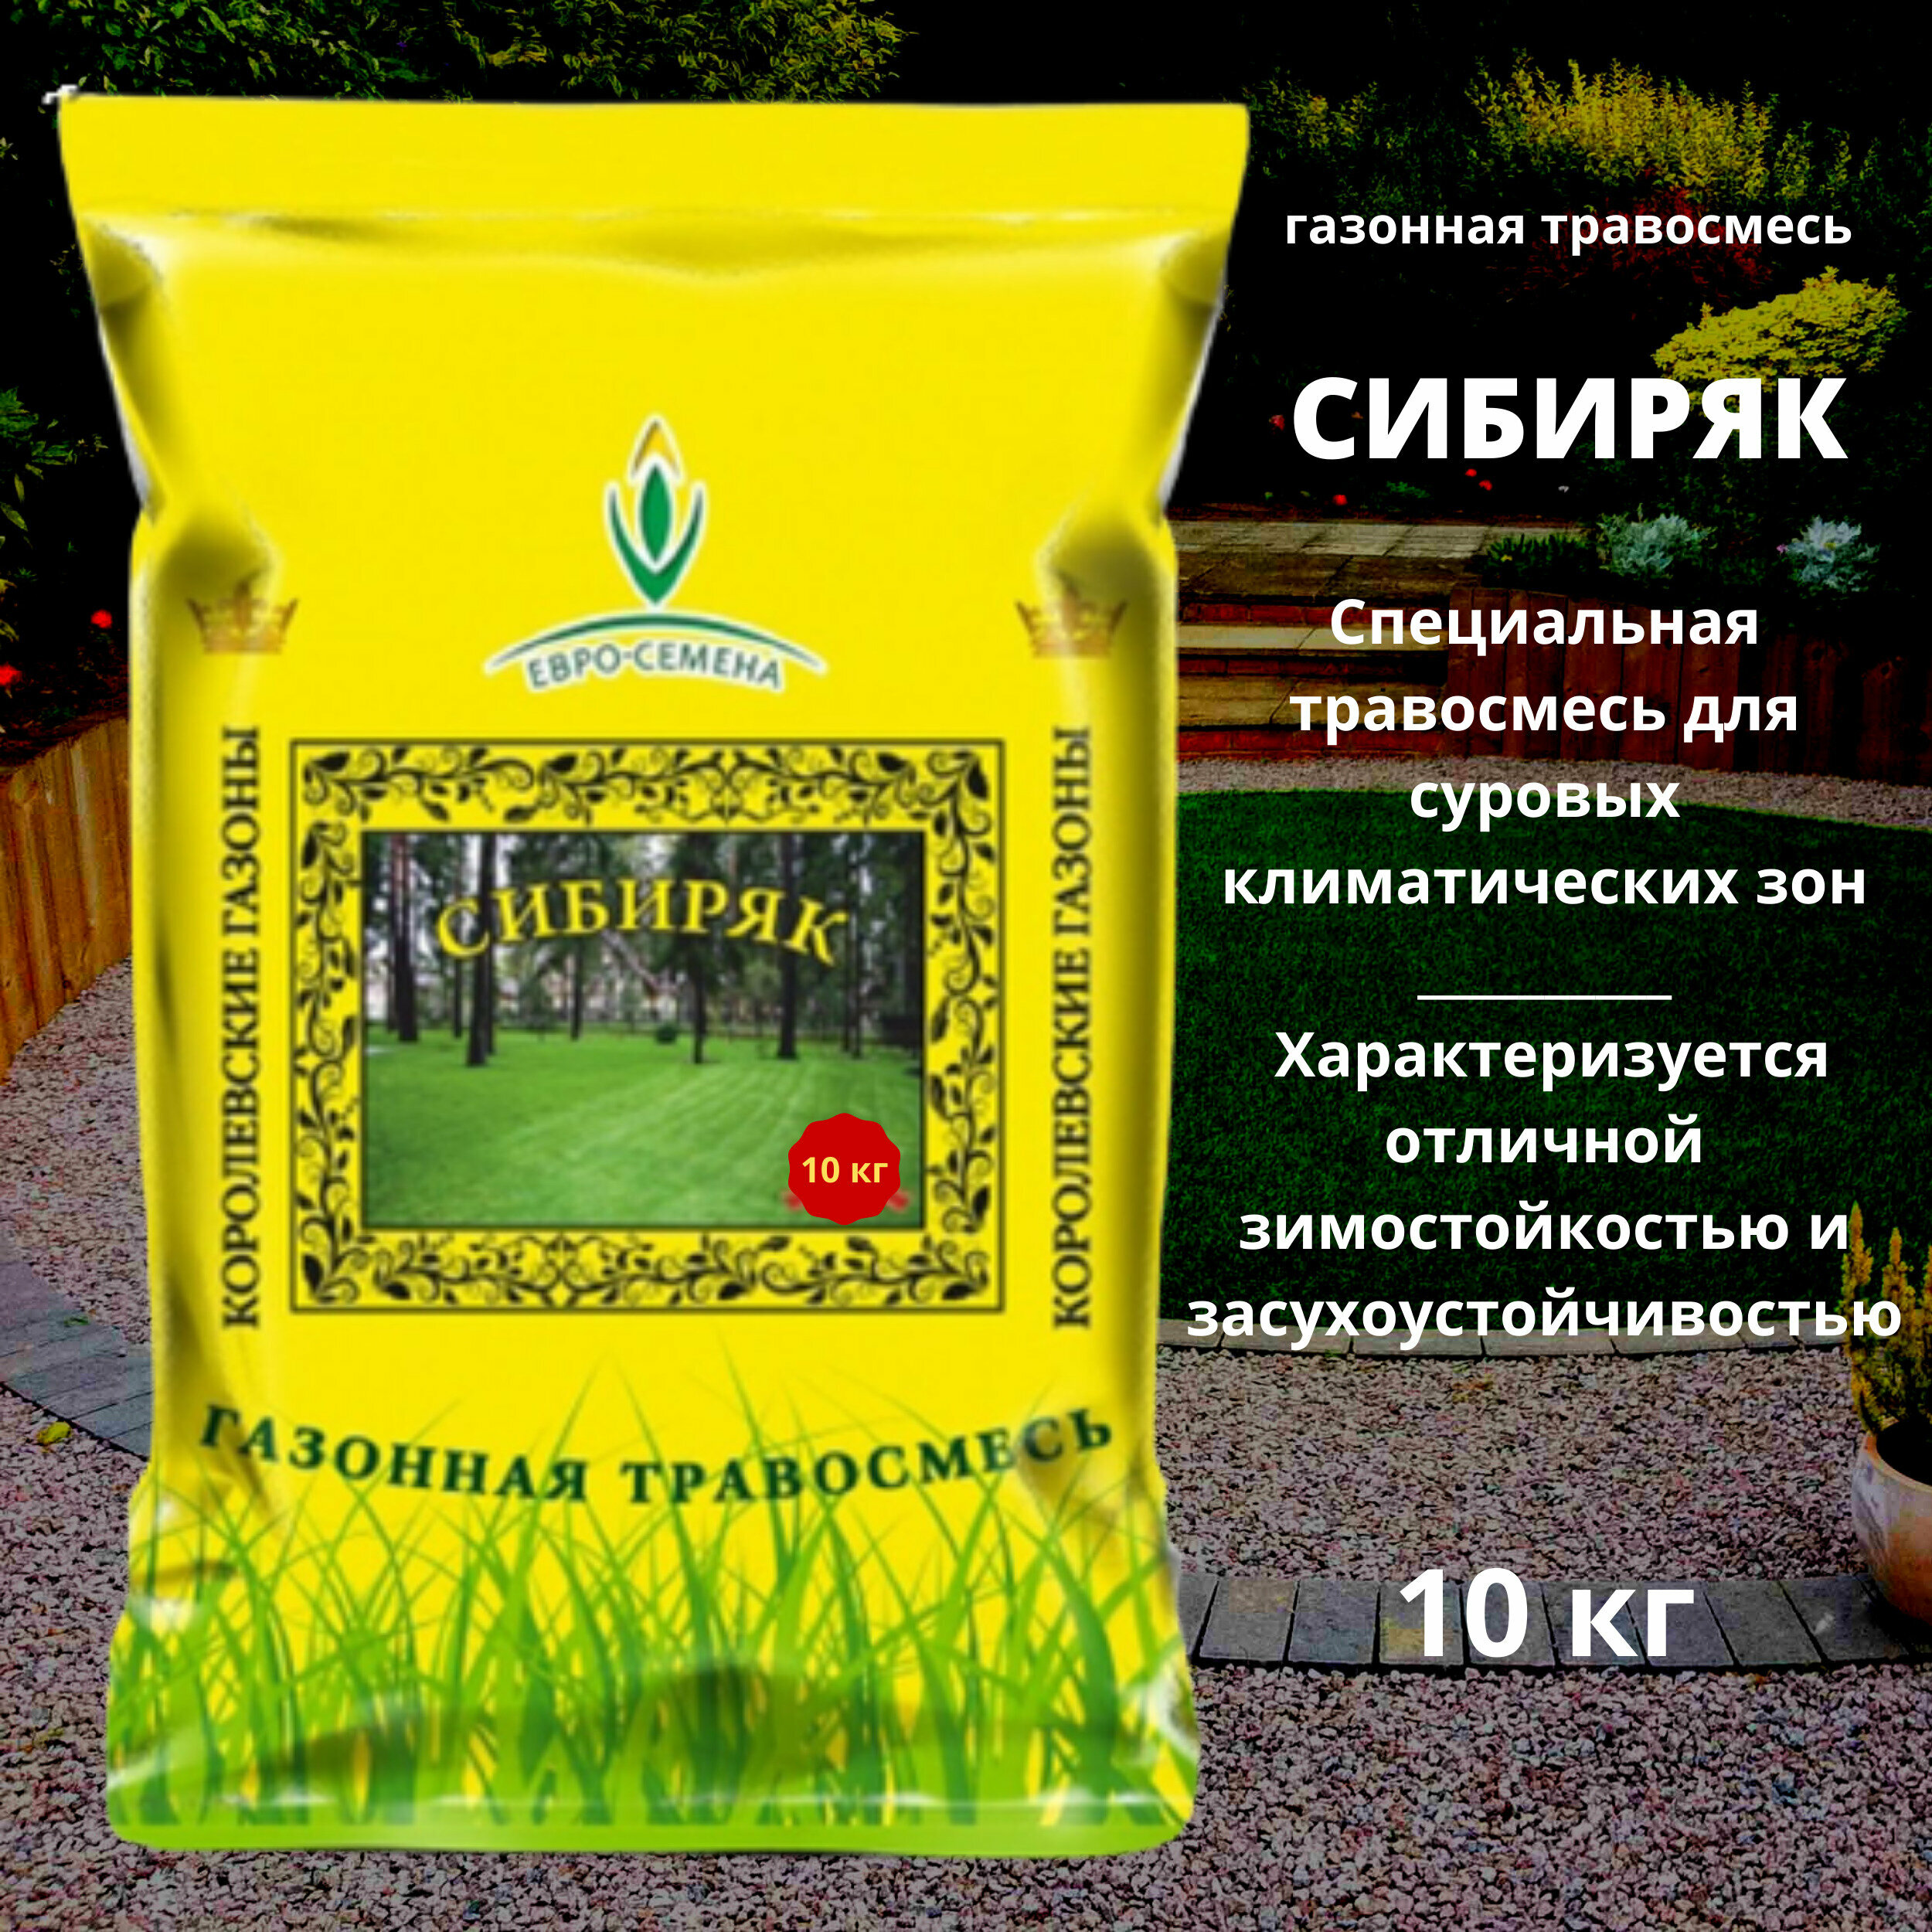 Газонная травосмесь (семена) Сибиряк 10 кг для суровых климатических зон